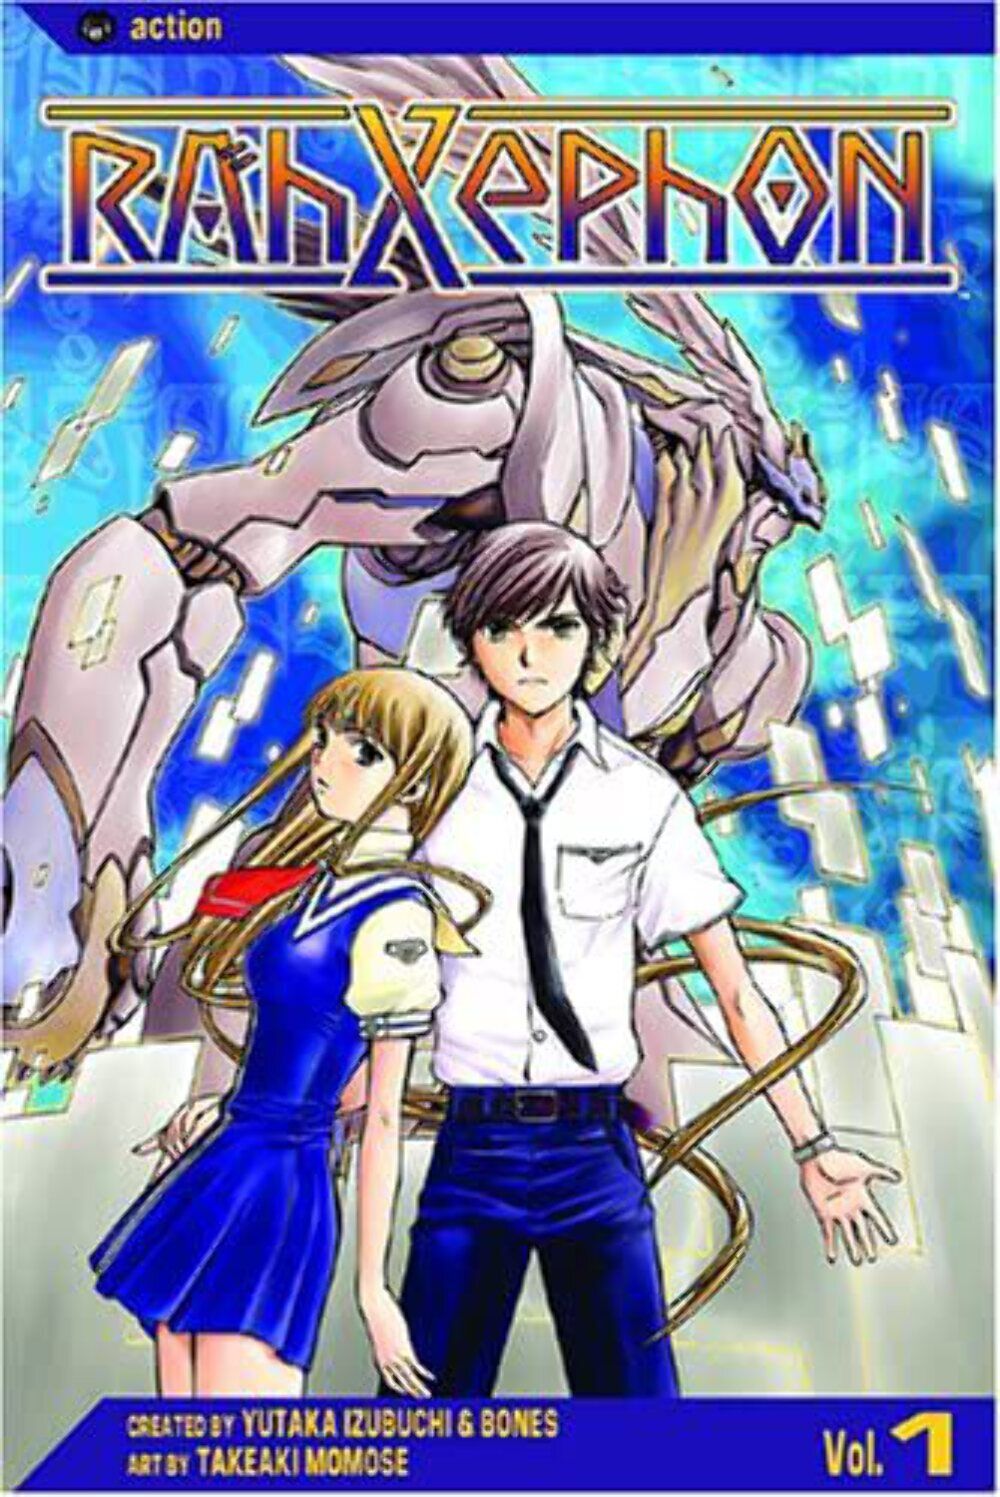 Rahxephon Vol 1 Used Manga English Language Graphic Novel Comic Book